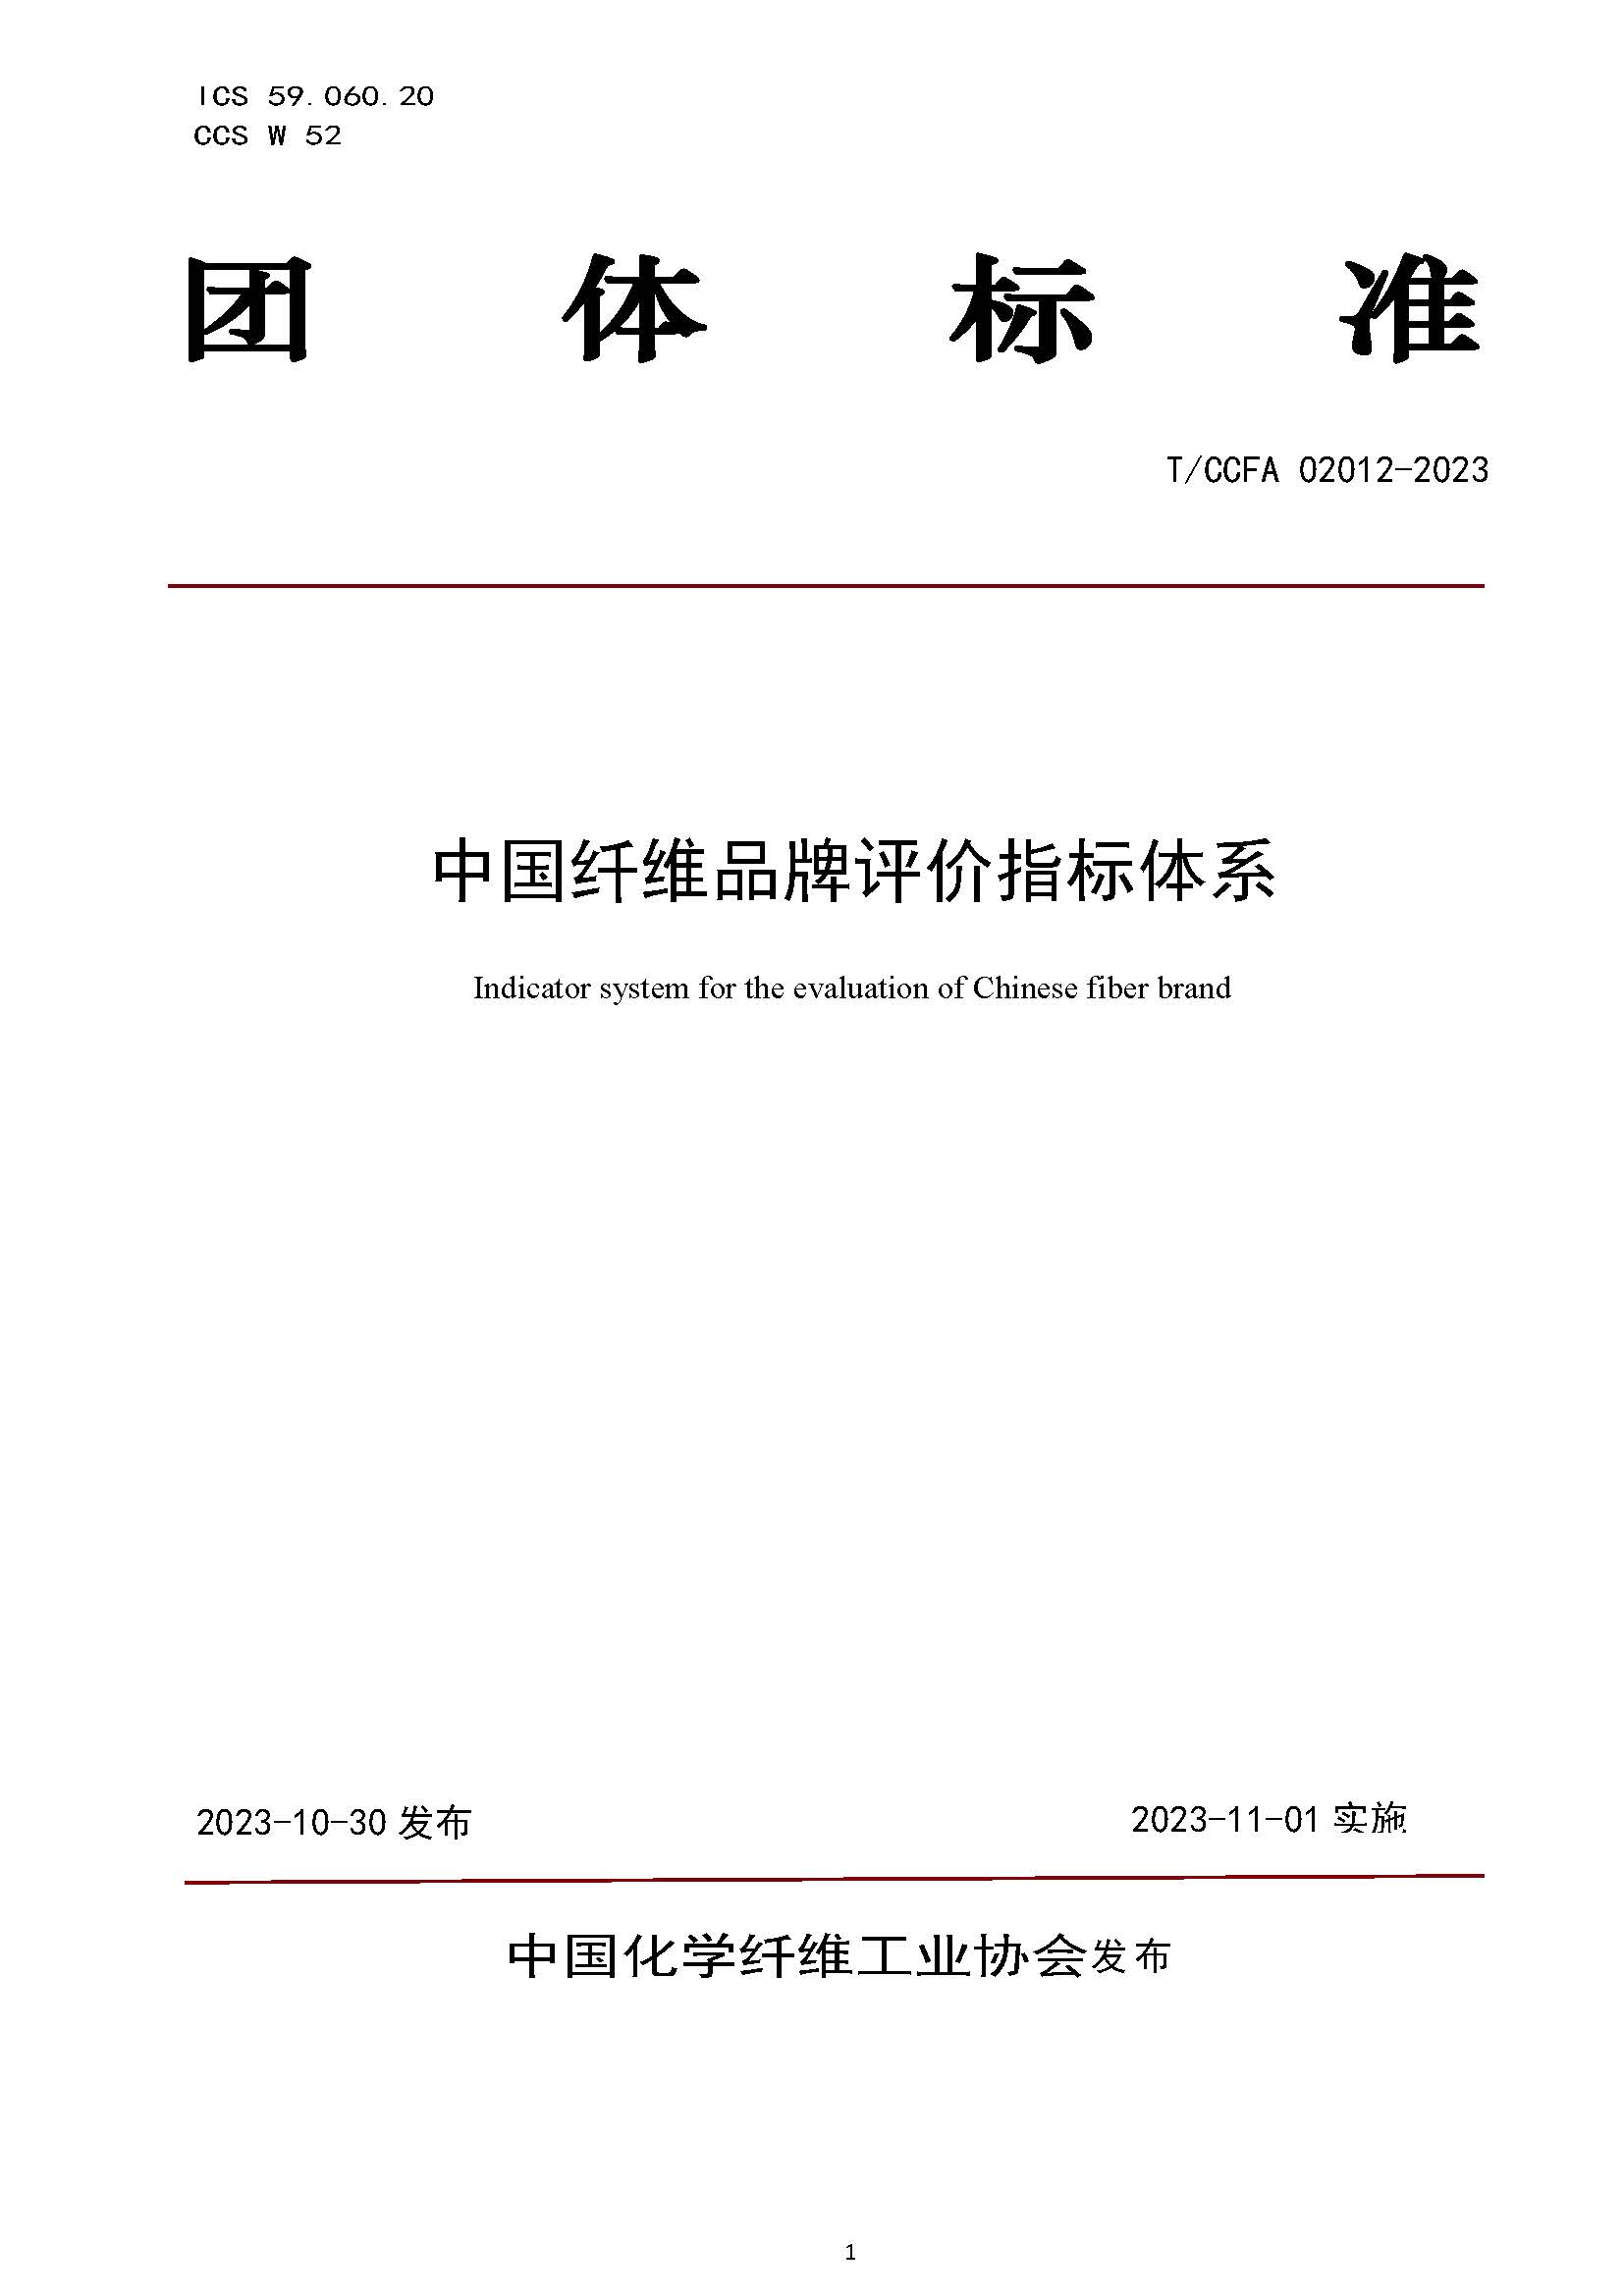 页面提取自－TCCFA 02012-2023  中国纤维品牌评价指标体系(4).jpg